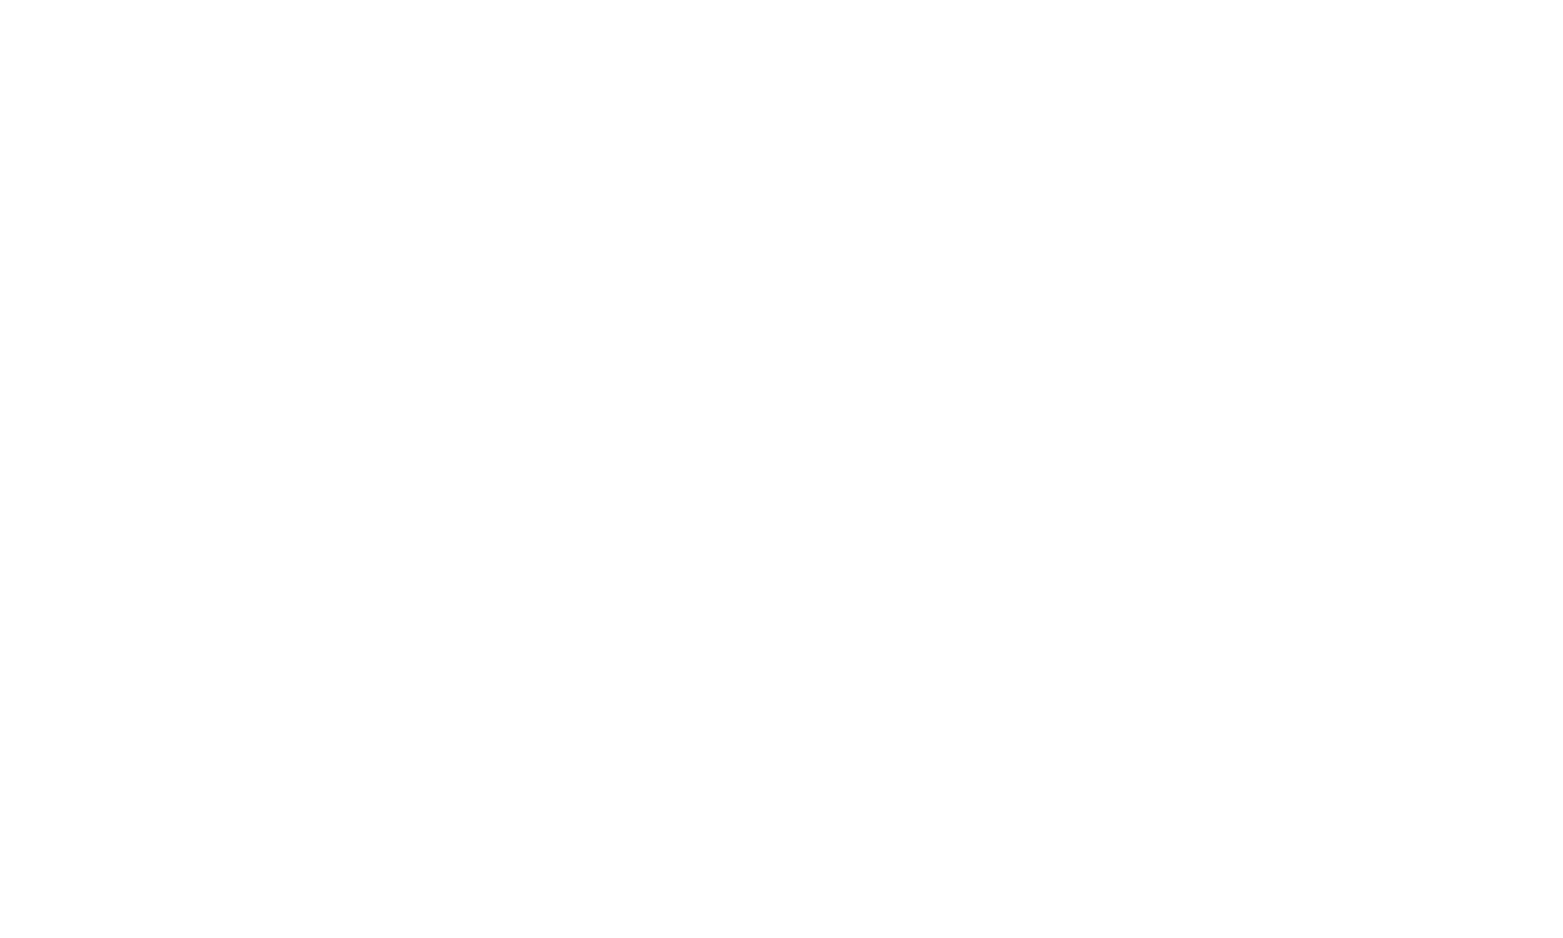 Hotel Supplies Mart